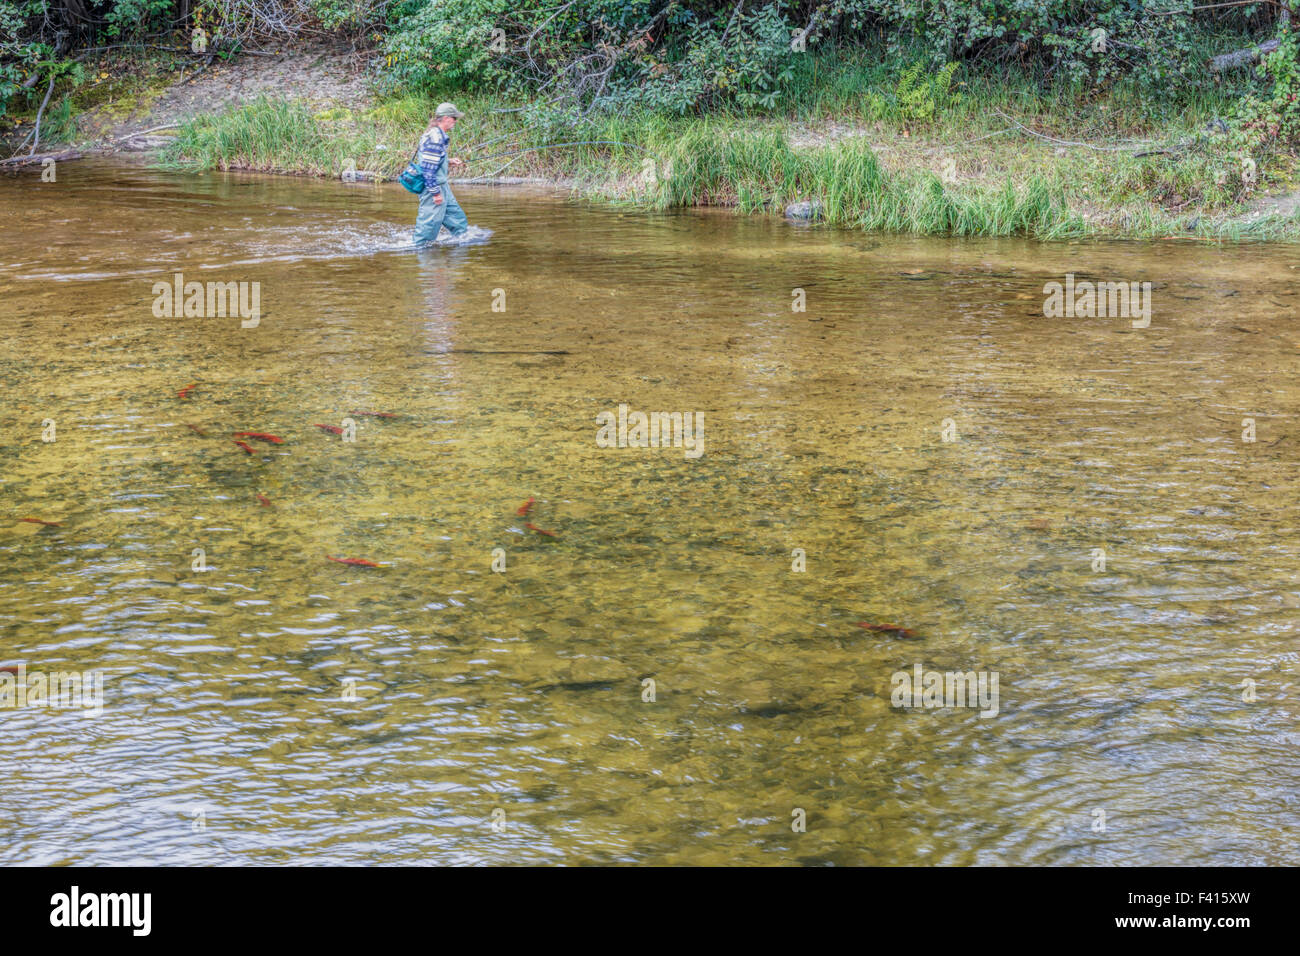 La pêche du saumon en rivière à gué pêcheur radeau, célèbre pour ses saumons sockeye, rouge ou rouge Saumon, British Columbia, Canada. Banque D'Images